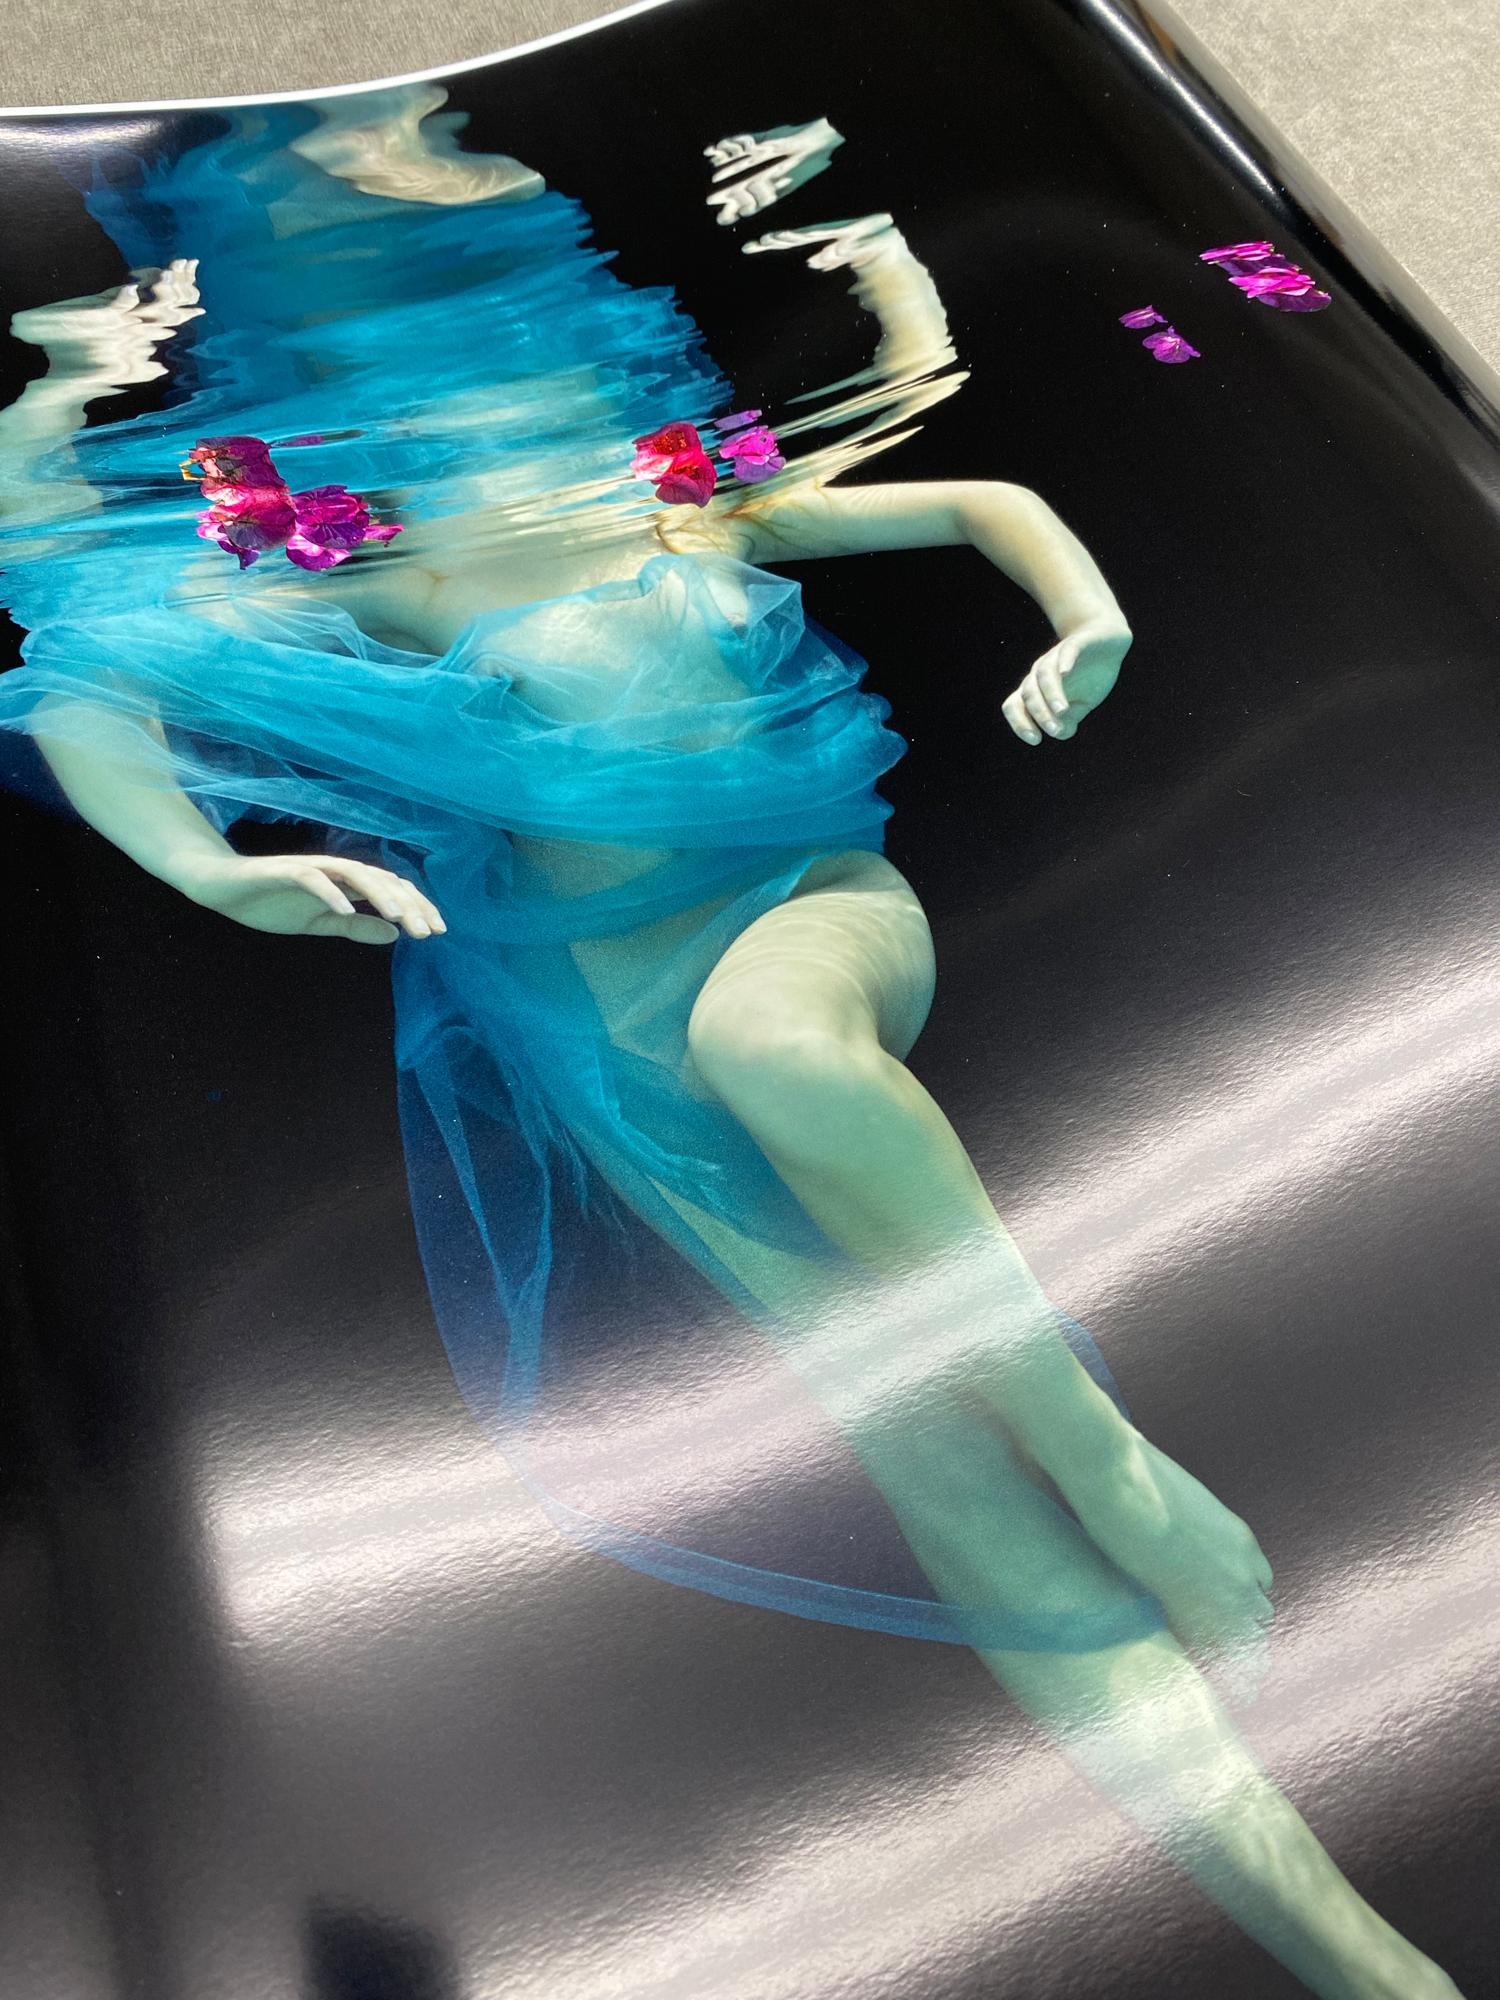 Ein Unterwasserfoto einer nackten jungen Frau, die in blaugrünen Tüll gehüllt ist und mit Bougainvillea-Blüten auf neutralem schwarzen Hintergrund tanzt.

Vom Künstler signierter Originaldruck in Galeriequalität. 
Digitaler Pigmentdruck auf